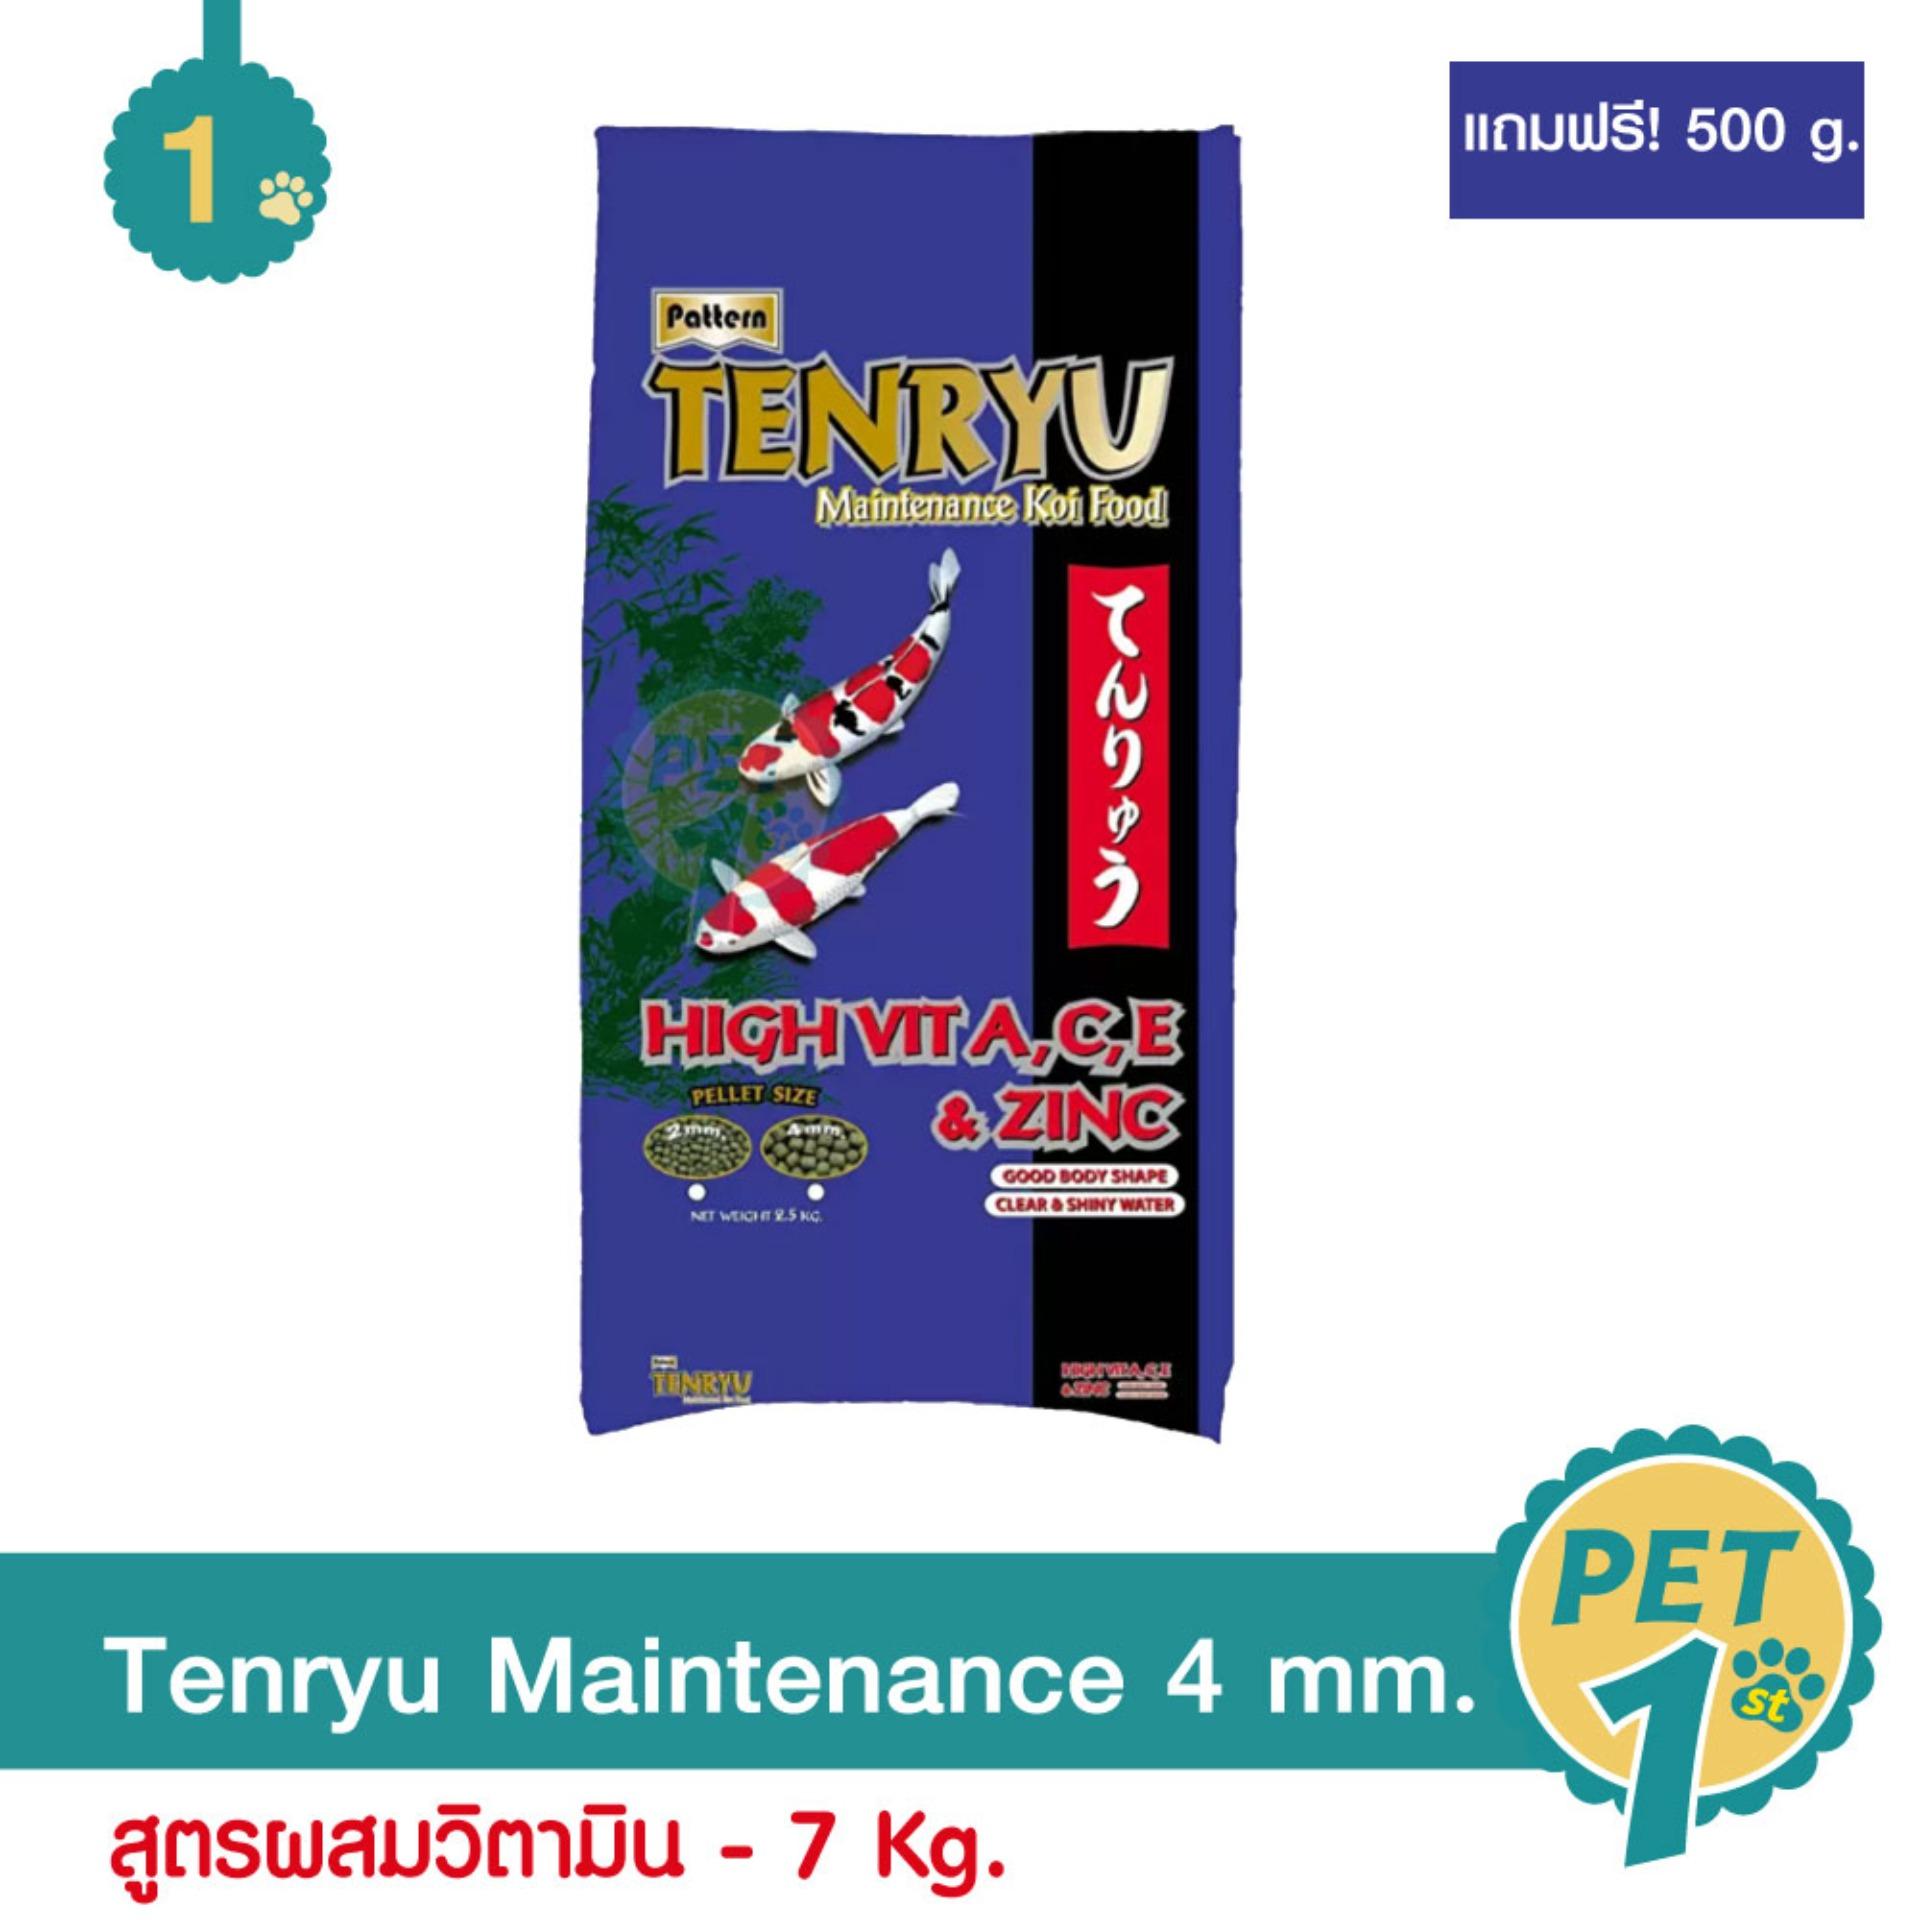 Tenryu Maintenance อาหารปลาคาร์ฟ สูตรผสมวิตามิน ไม่ทำให้น้ำขุ่น เม็ดเล็ก (4 มม.) 7 Kg. แถมฟรี! 500 g.